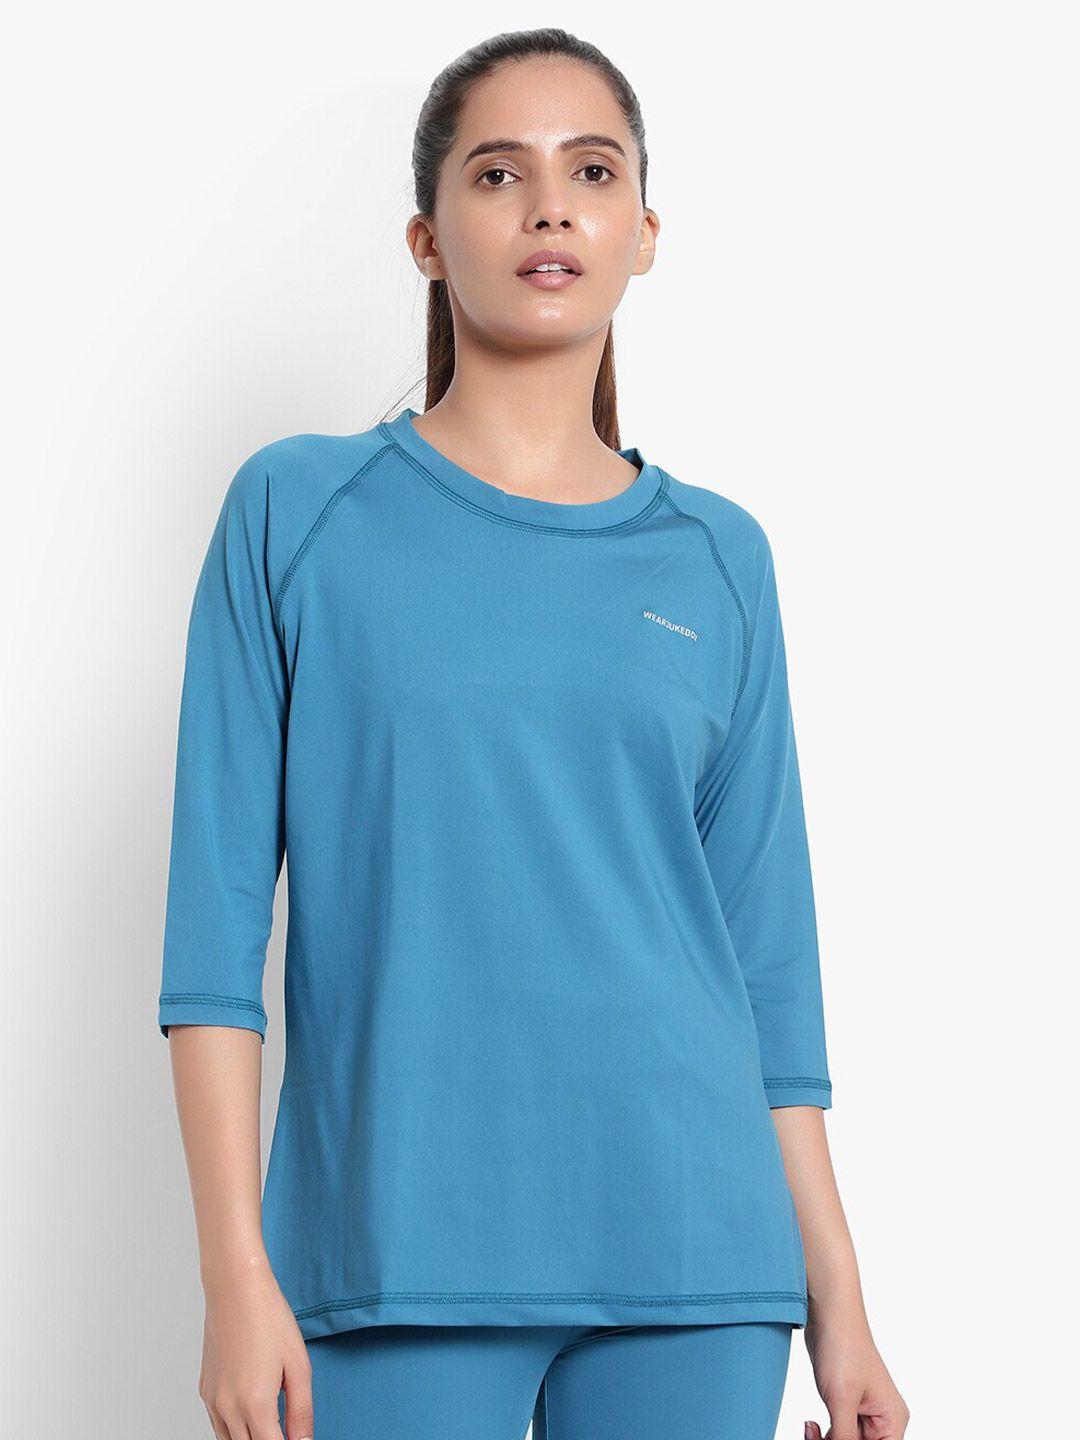 wearjukebox women blue t-shirt